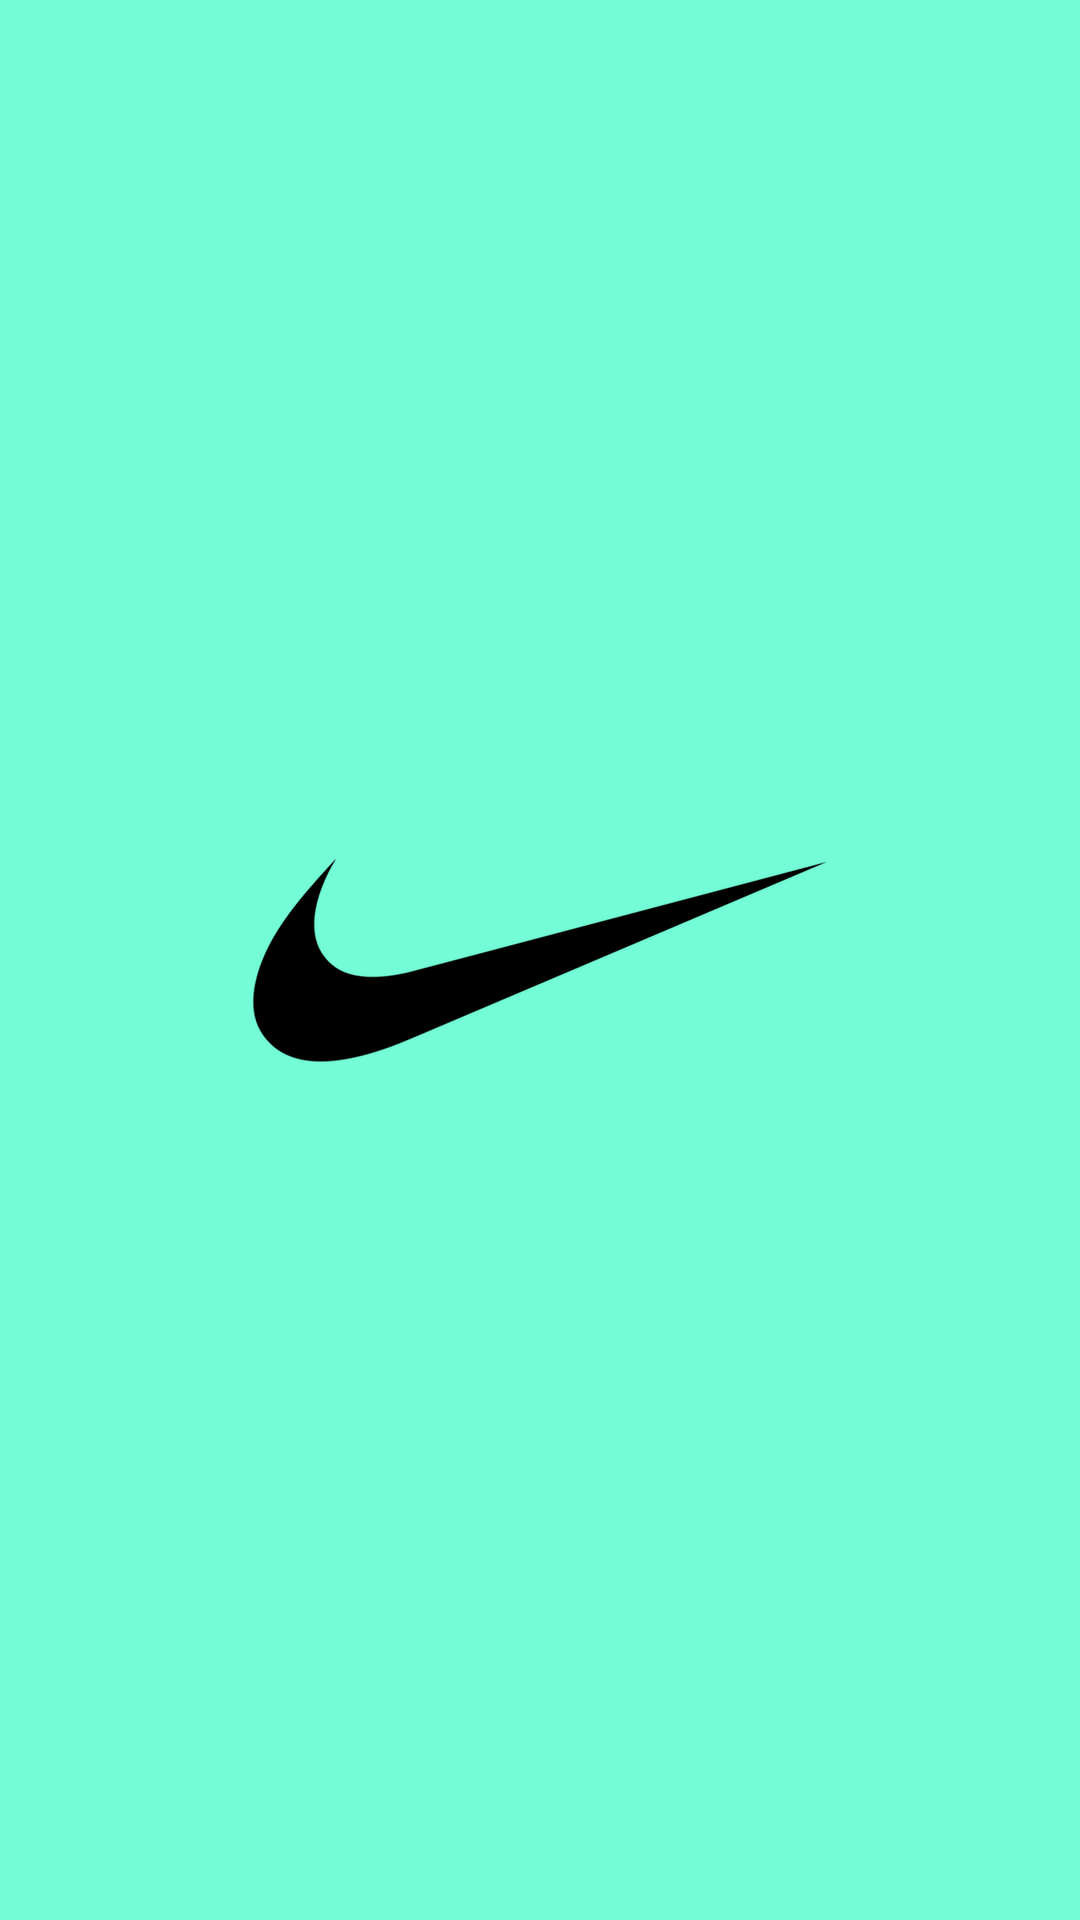 Nike Swoosh Wallpaper ·① WallpaperTag